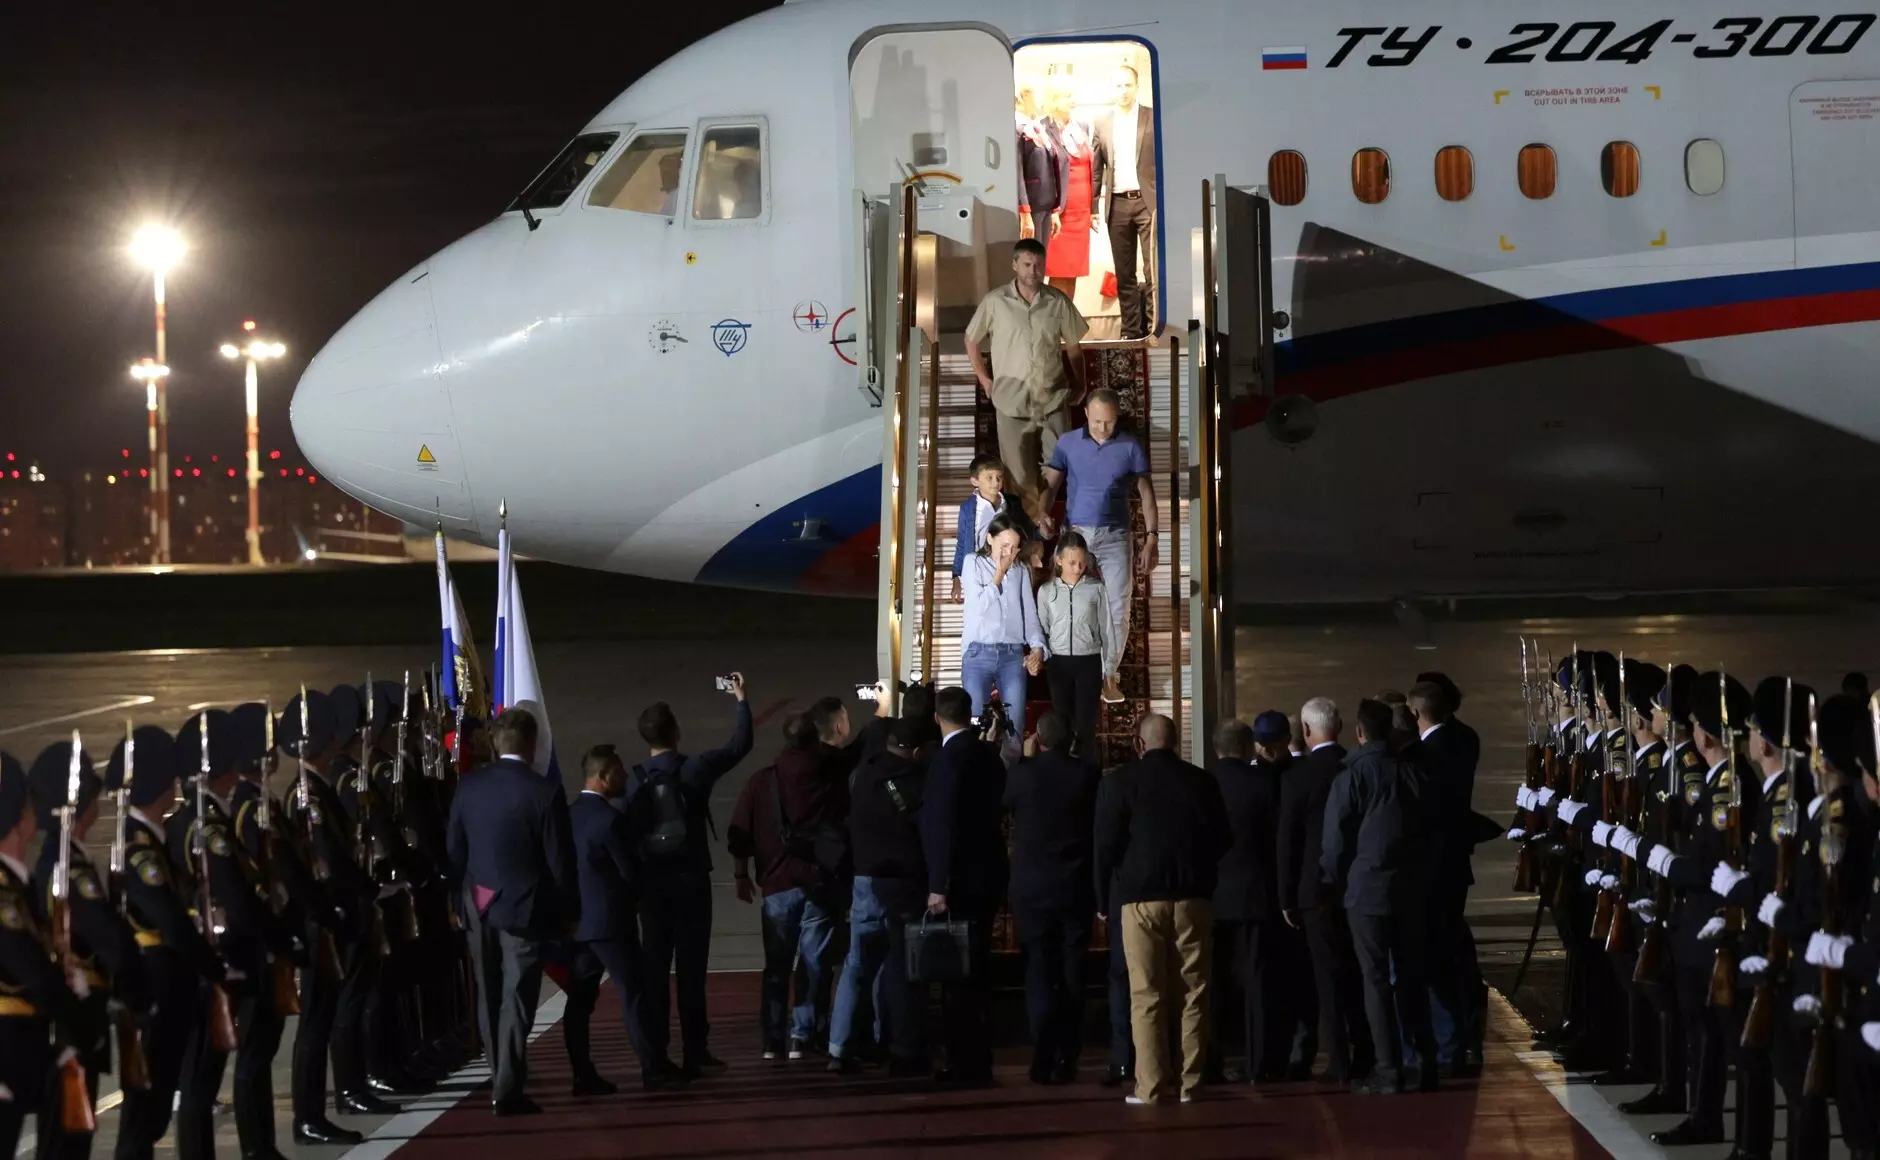 El presidente ruso, Vladimir Putin, recibe a los prisioneros liberados tras el intercambio en el Aeropuerto Internacional de Vnukovo en Moscú. — KREMLIN / dpa / Europa press